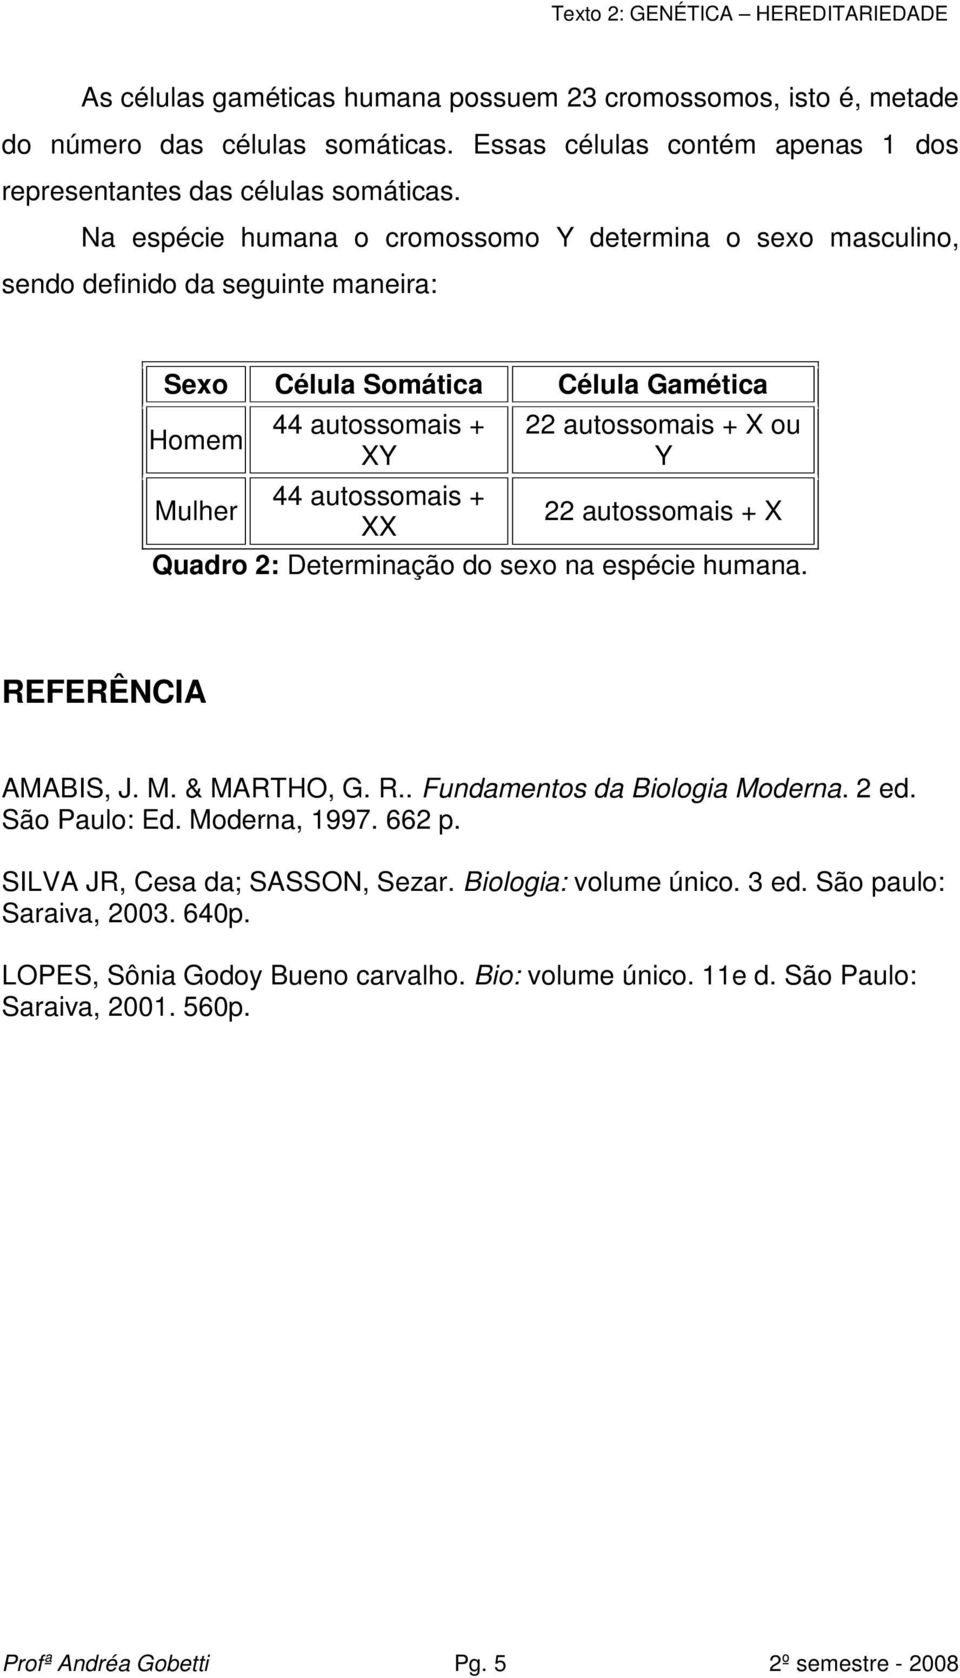 + Mulher 22 autossomais + X XX Quadro 2: Determinação do sexo na espécie humana. REFERÊNCIA AMABIS, J. M. & MARTHO, G. R.. Fundamentos da Biologia Moderna. 2 ed. São Paulo: Ed. Moderna, 1997. 662 p.